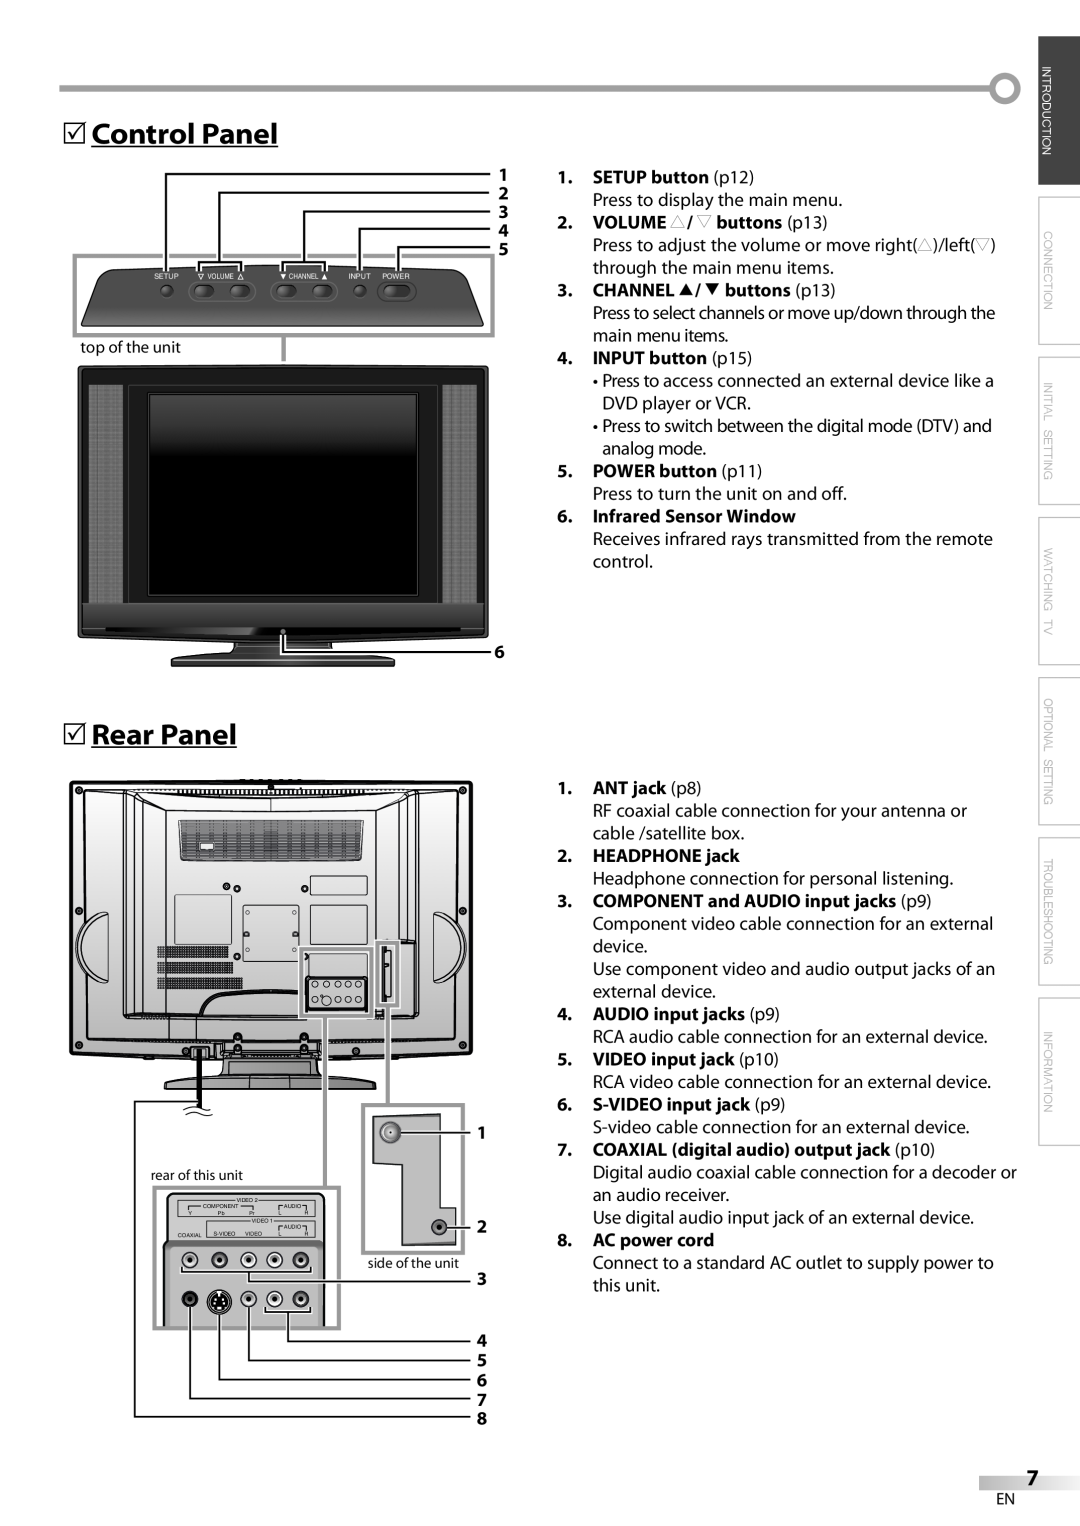 FUNAI LC200EM8 5Control Panel, 5Rear Panel, SETUP button p12, VOLUME X/ Y buttons p13, CHANNEL K/ L buttons p13, device 